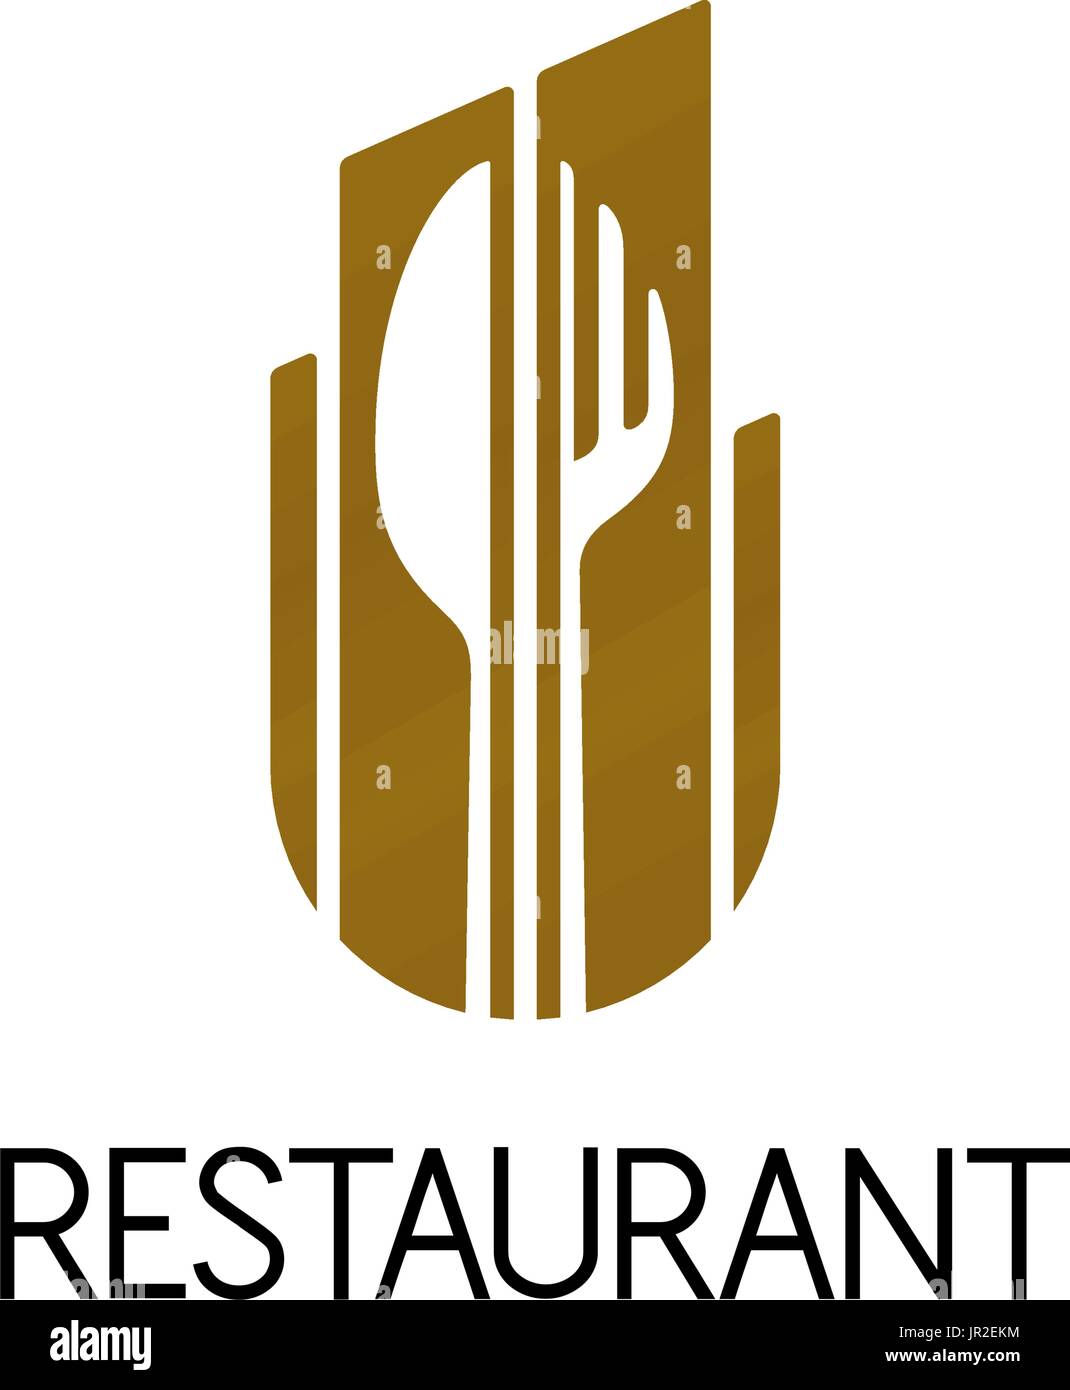 Design of restaurant logo on white background. Isolated vector illustration. Stock Vector